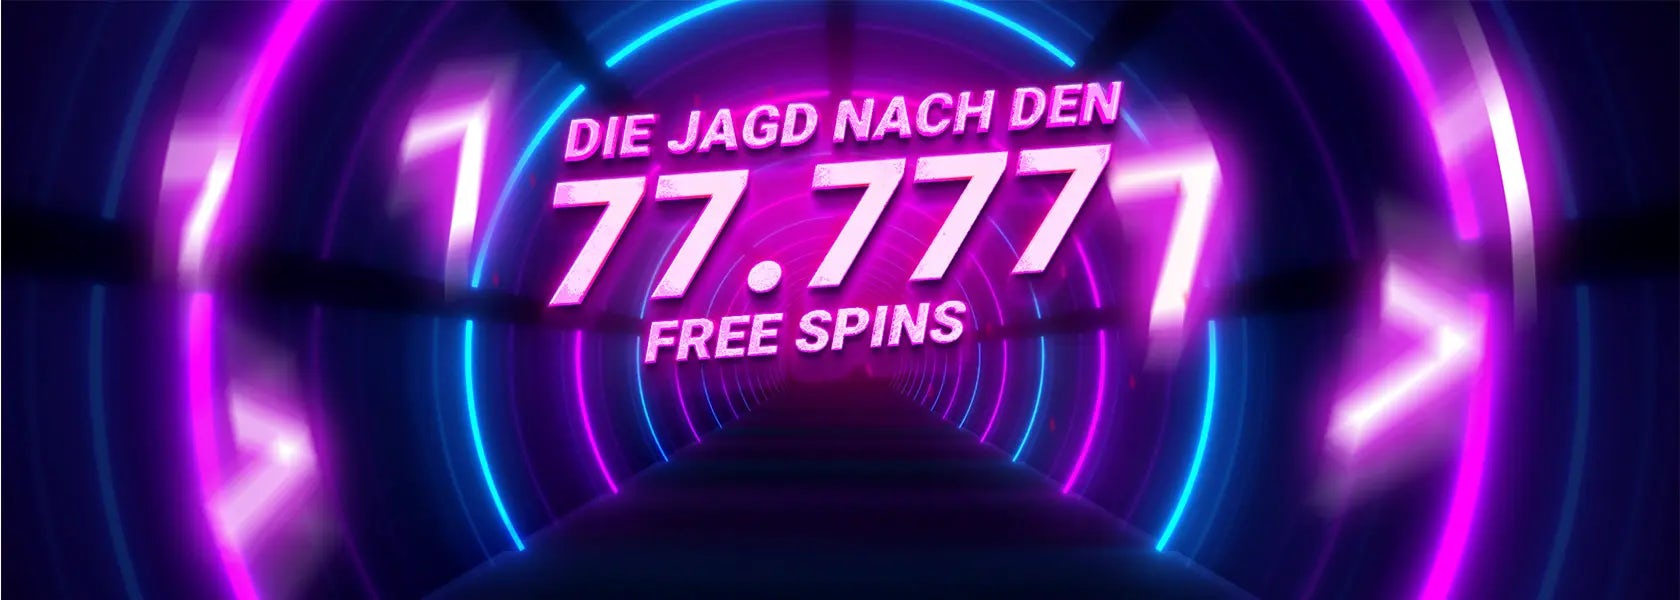 jagd-nach-den-77777-free-spins-06042024